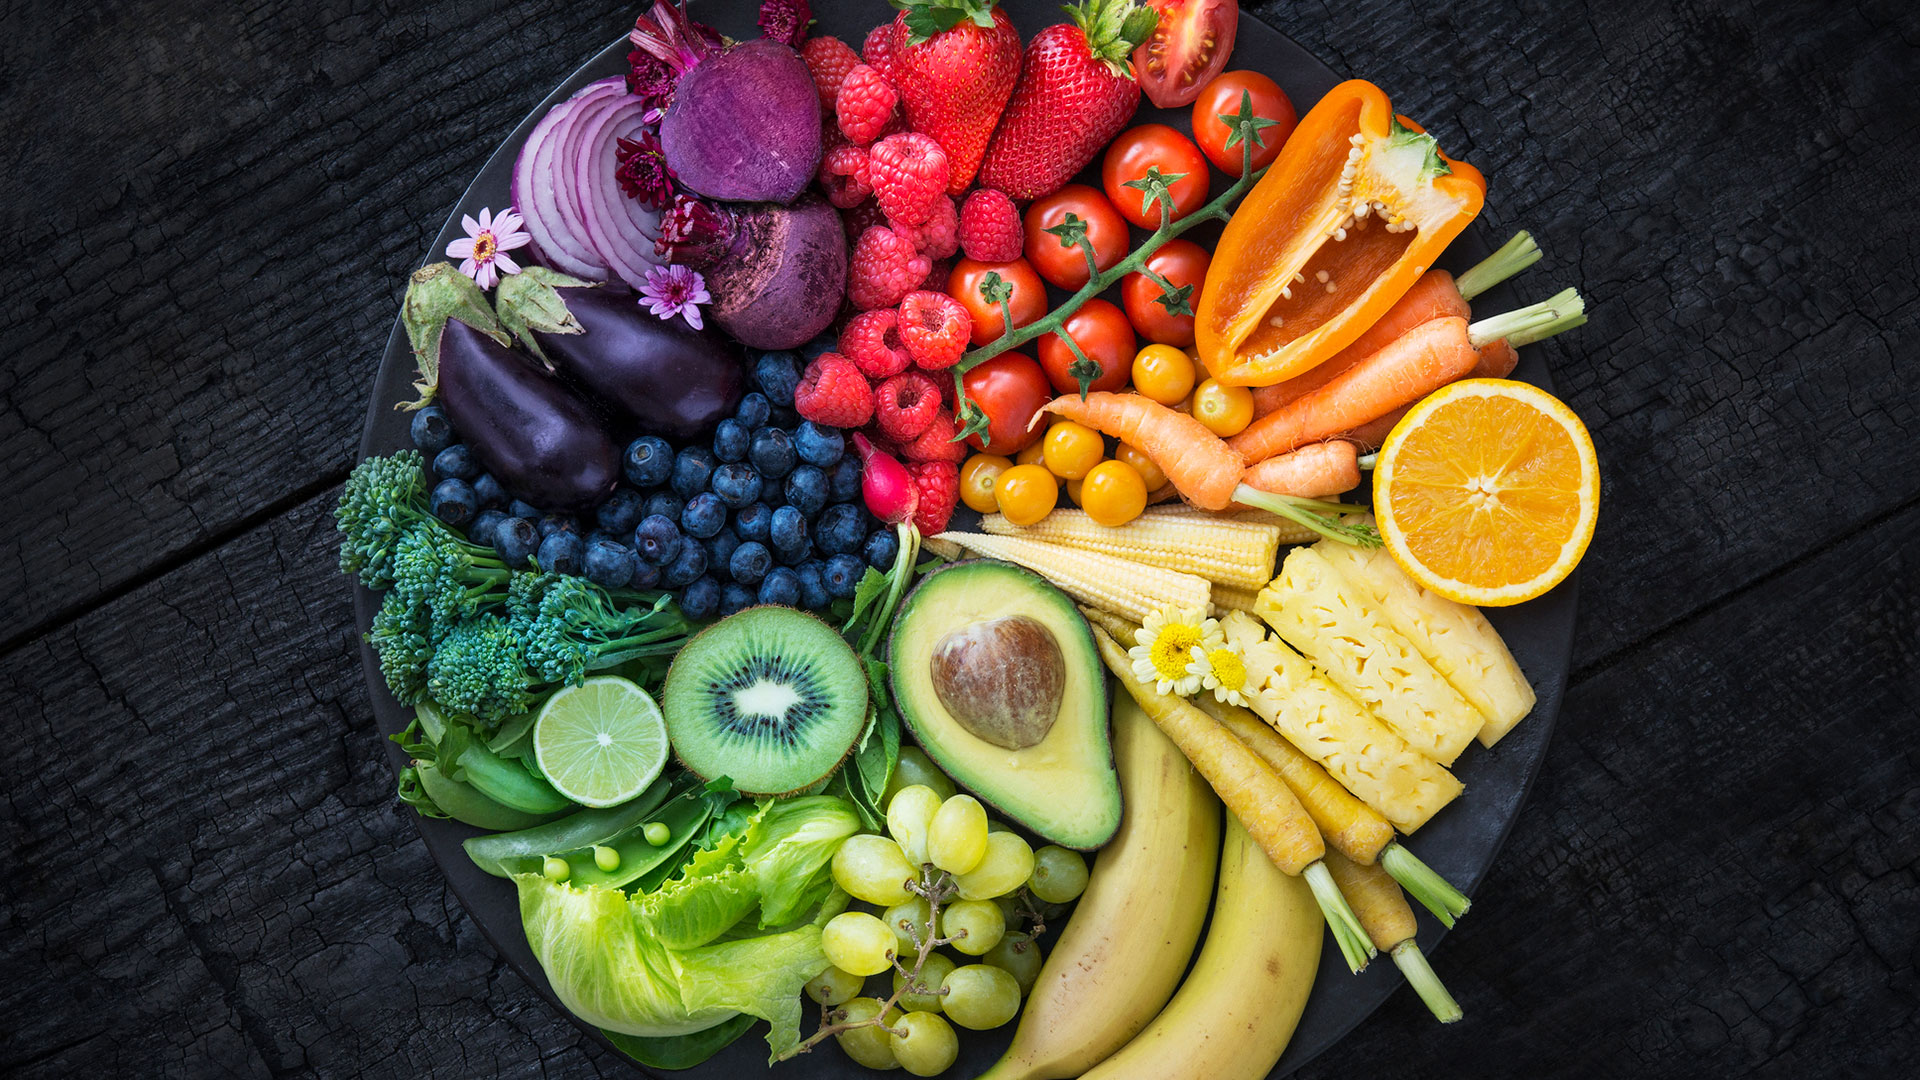 Frutas, verduras, pescados y legumbres son parte de la dieta que nos puede llevar a la longevidad
(Getty Images)